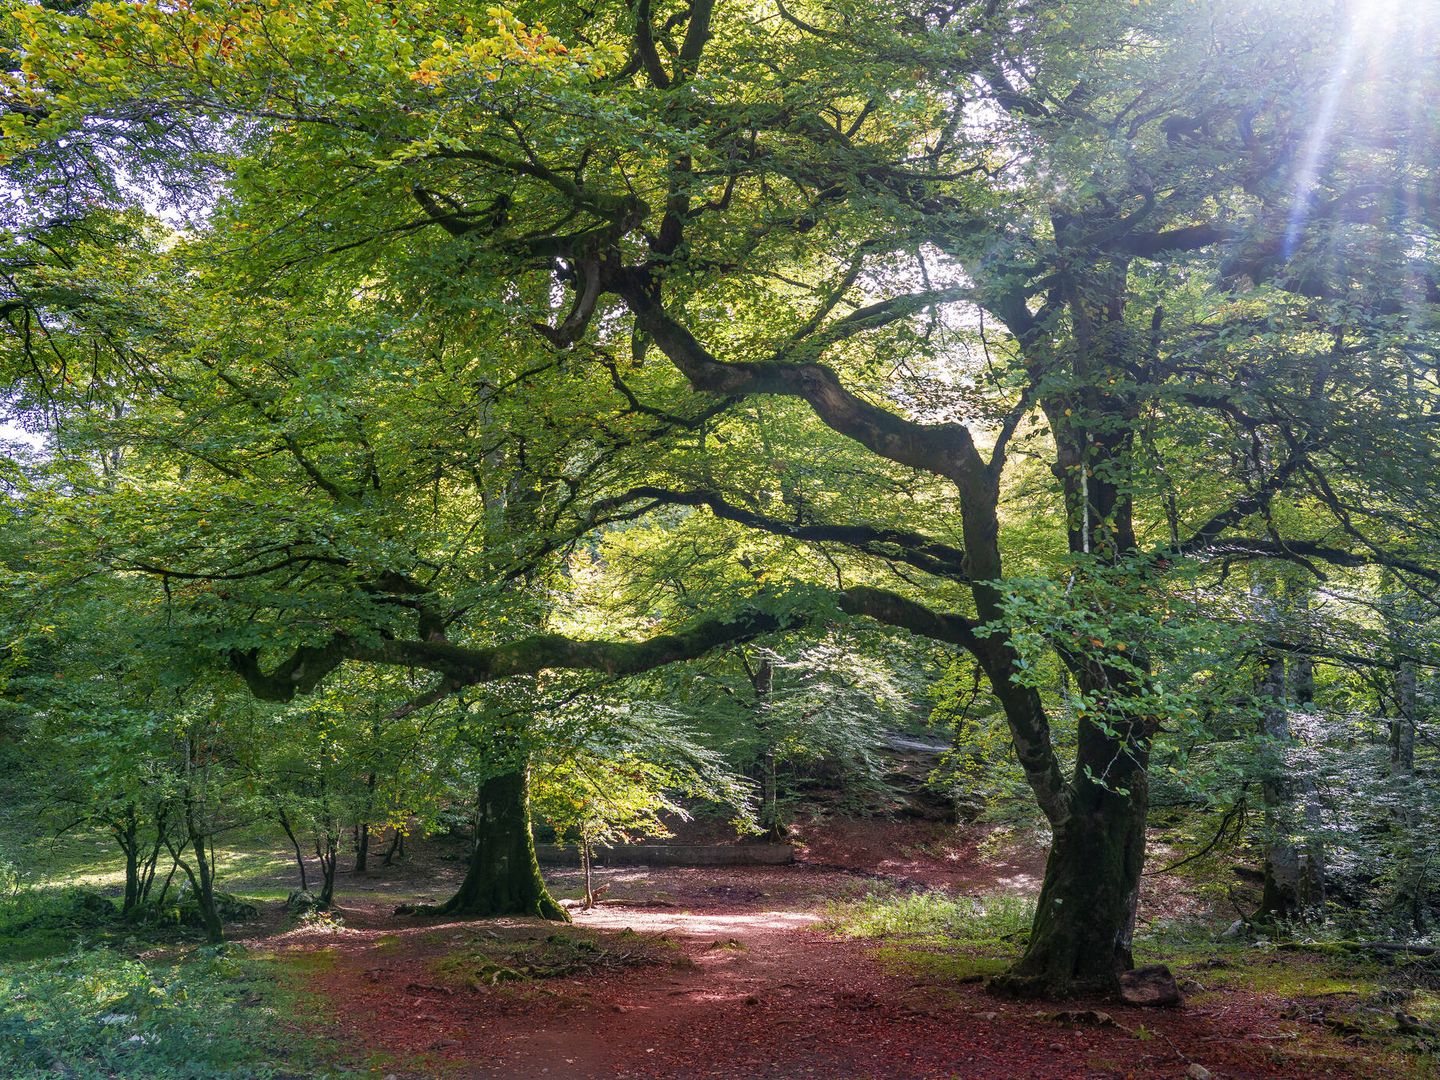 Bosque de hayas en la Selva de Irati (Fuente: iStock)